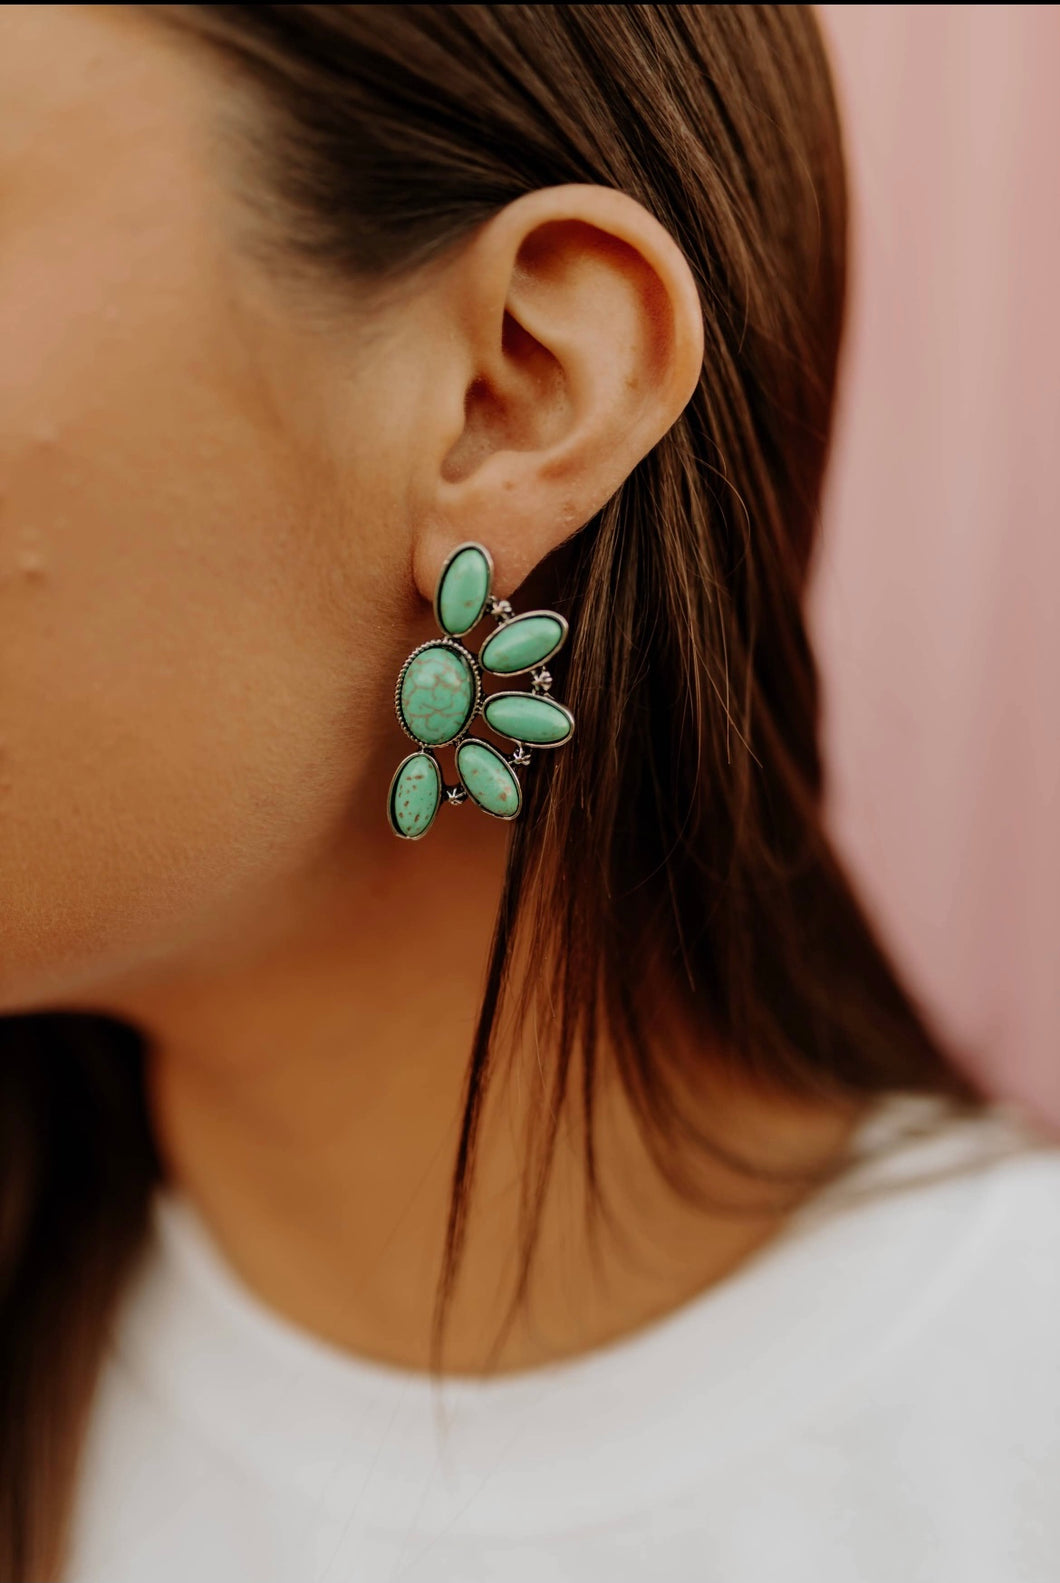 The Kayce Earrings